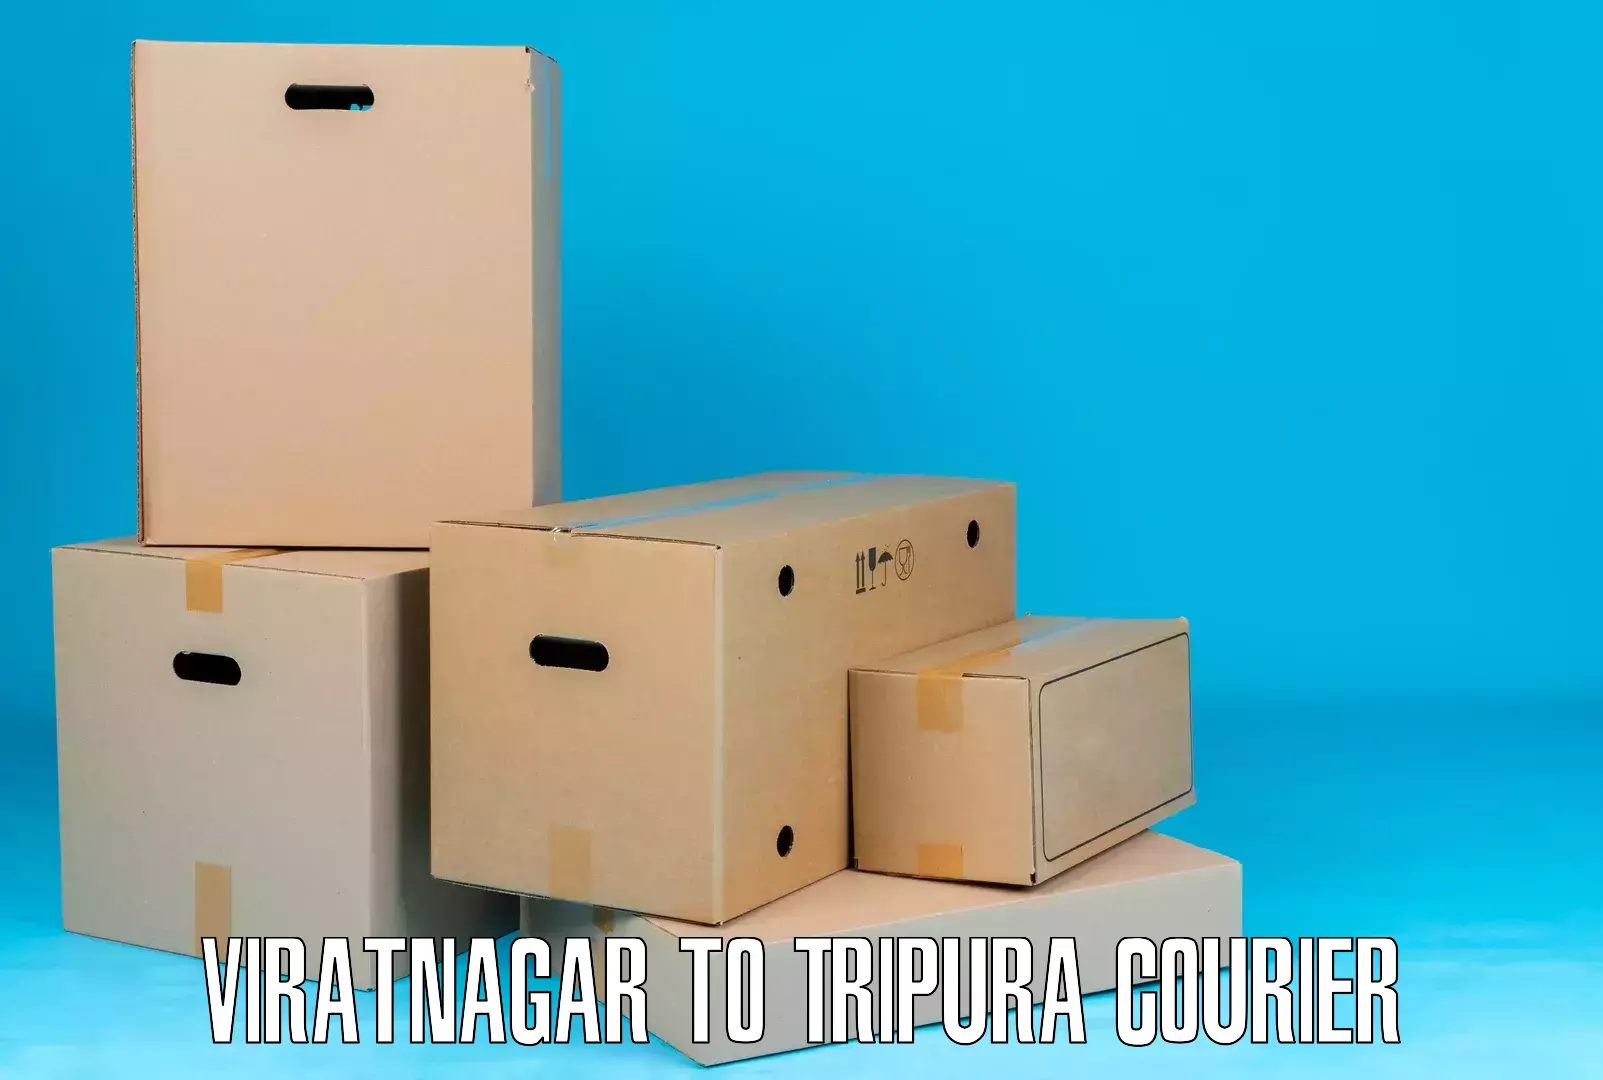 Ocean freight courier Viratnagar to Kamalpur